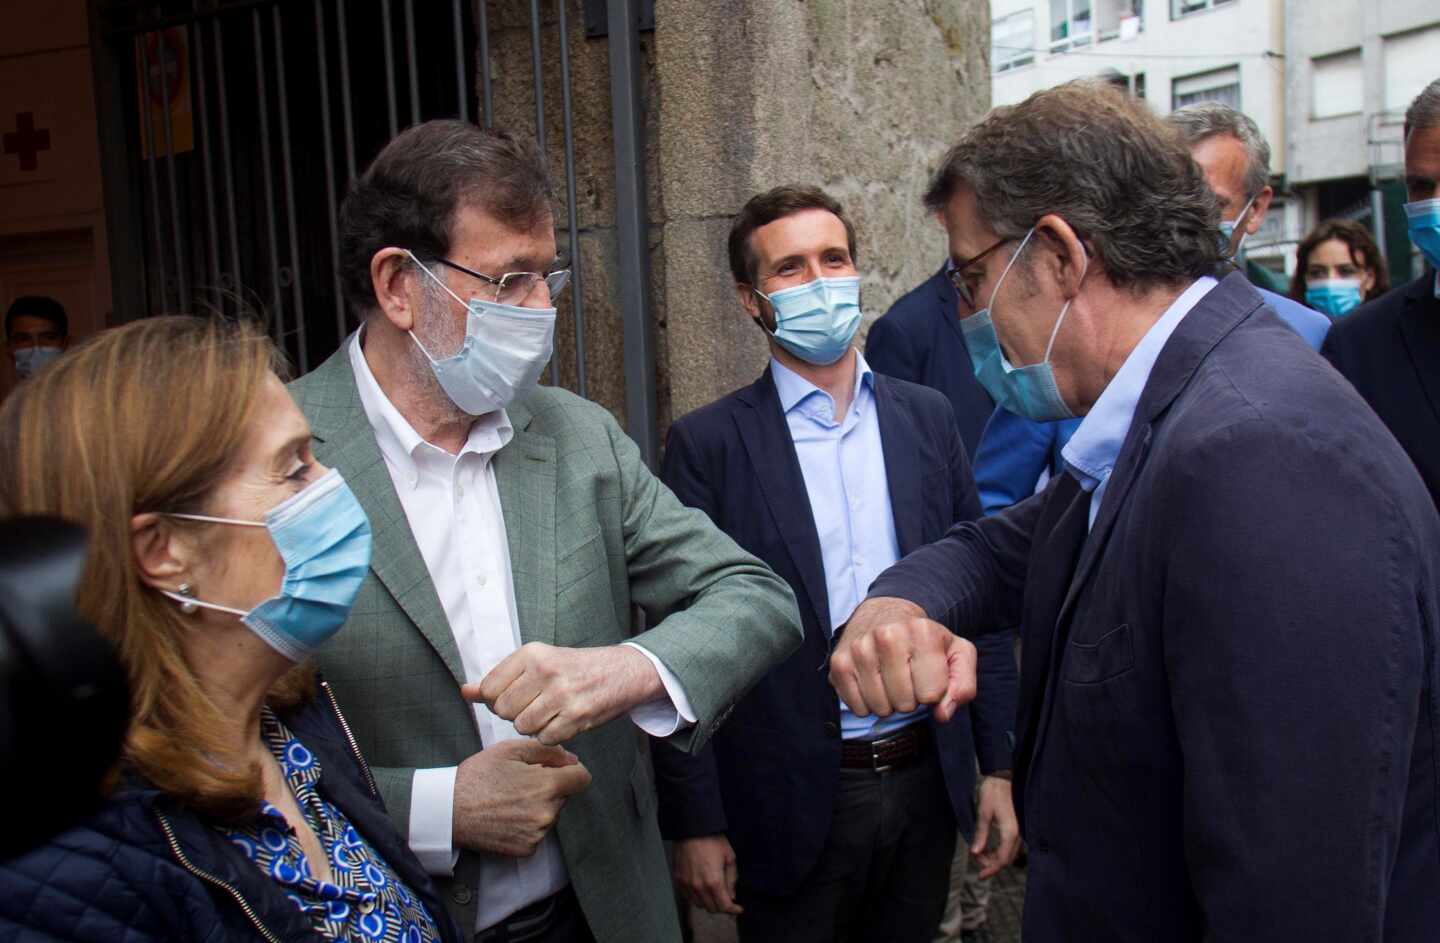 Mariano Rajoy y Alberto Núñez-Feijóo se saludan frente a Pablo Casado, este sábado en Pontevedra.